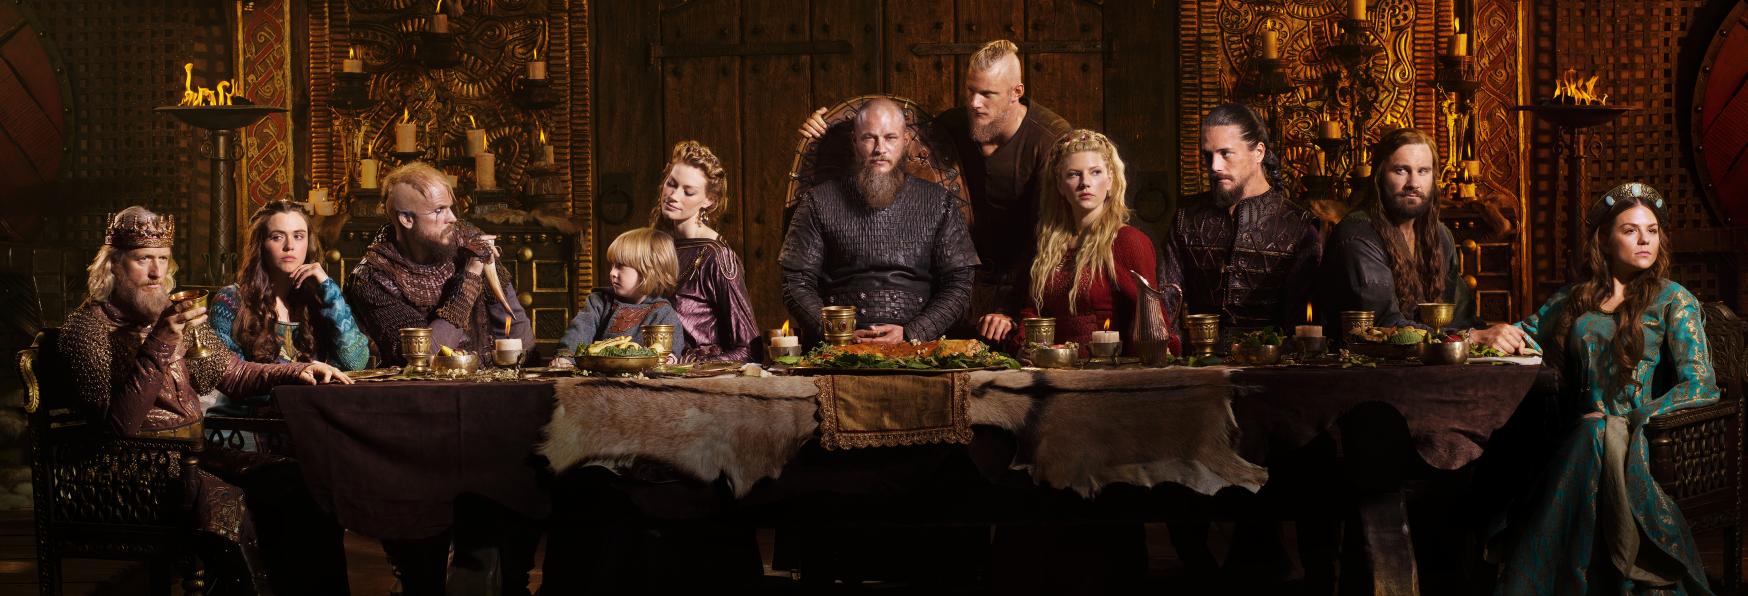 Vikings: Valhalla - Netflix Rilascia il Trailer Ufficiale della Serie TV Spin-off